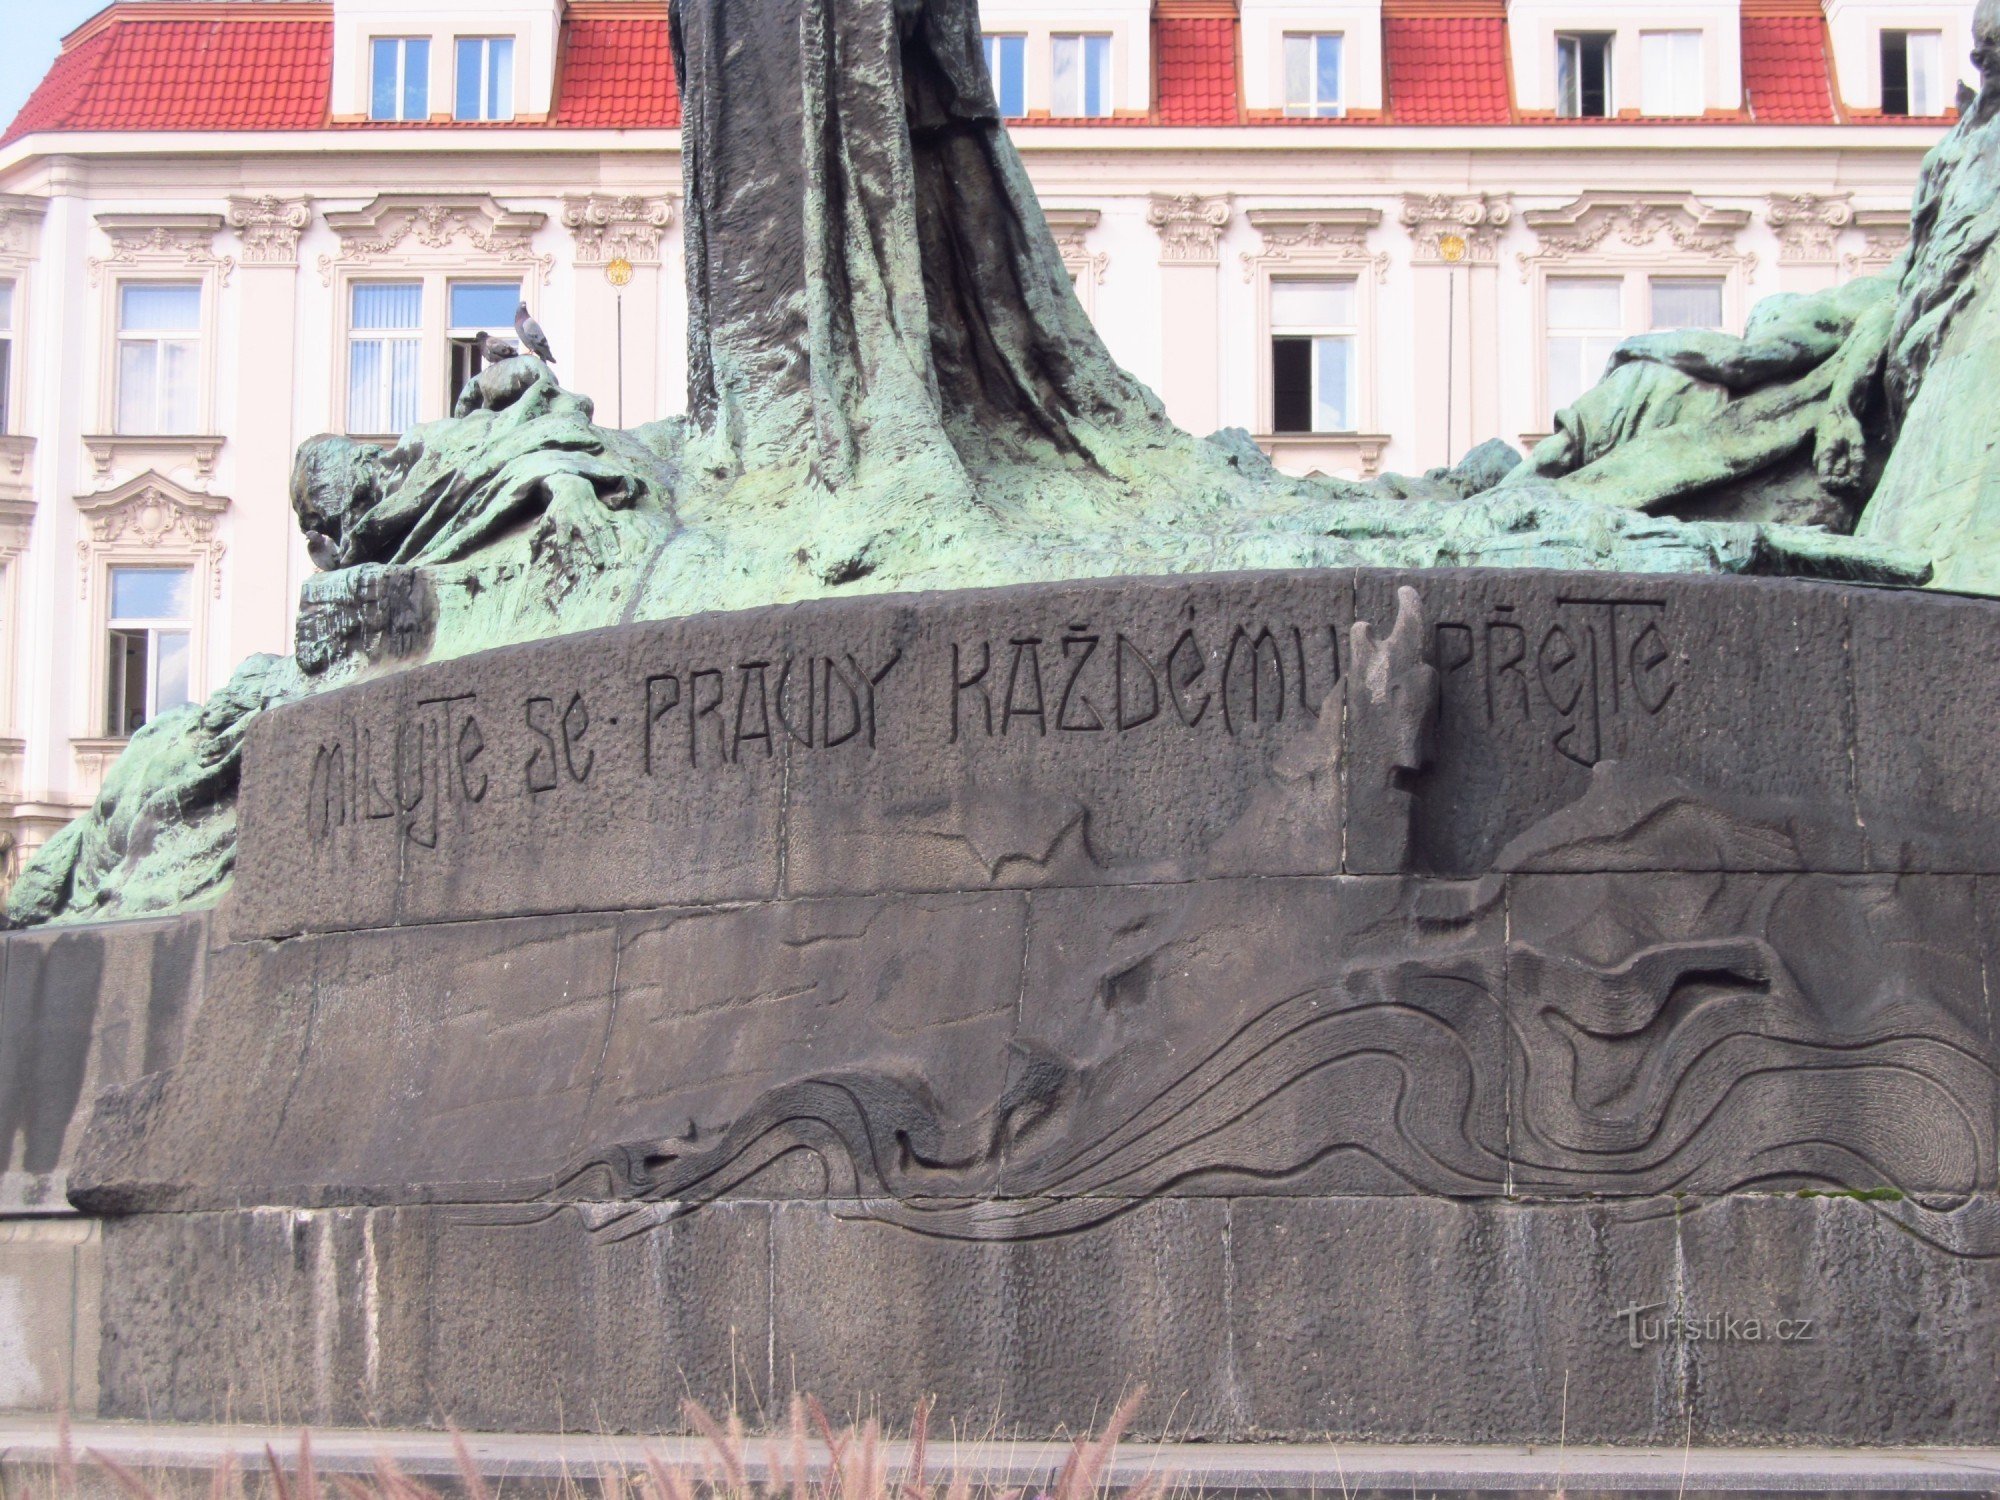 A inscrição no monumento ao Mestre Jan Hus na Praça da Cidade Velha em Praga